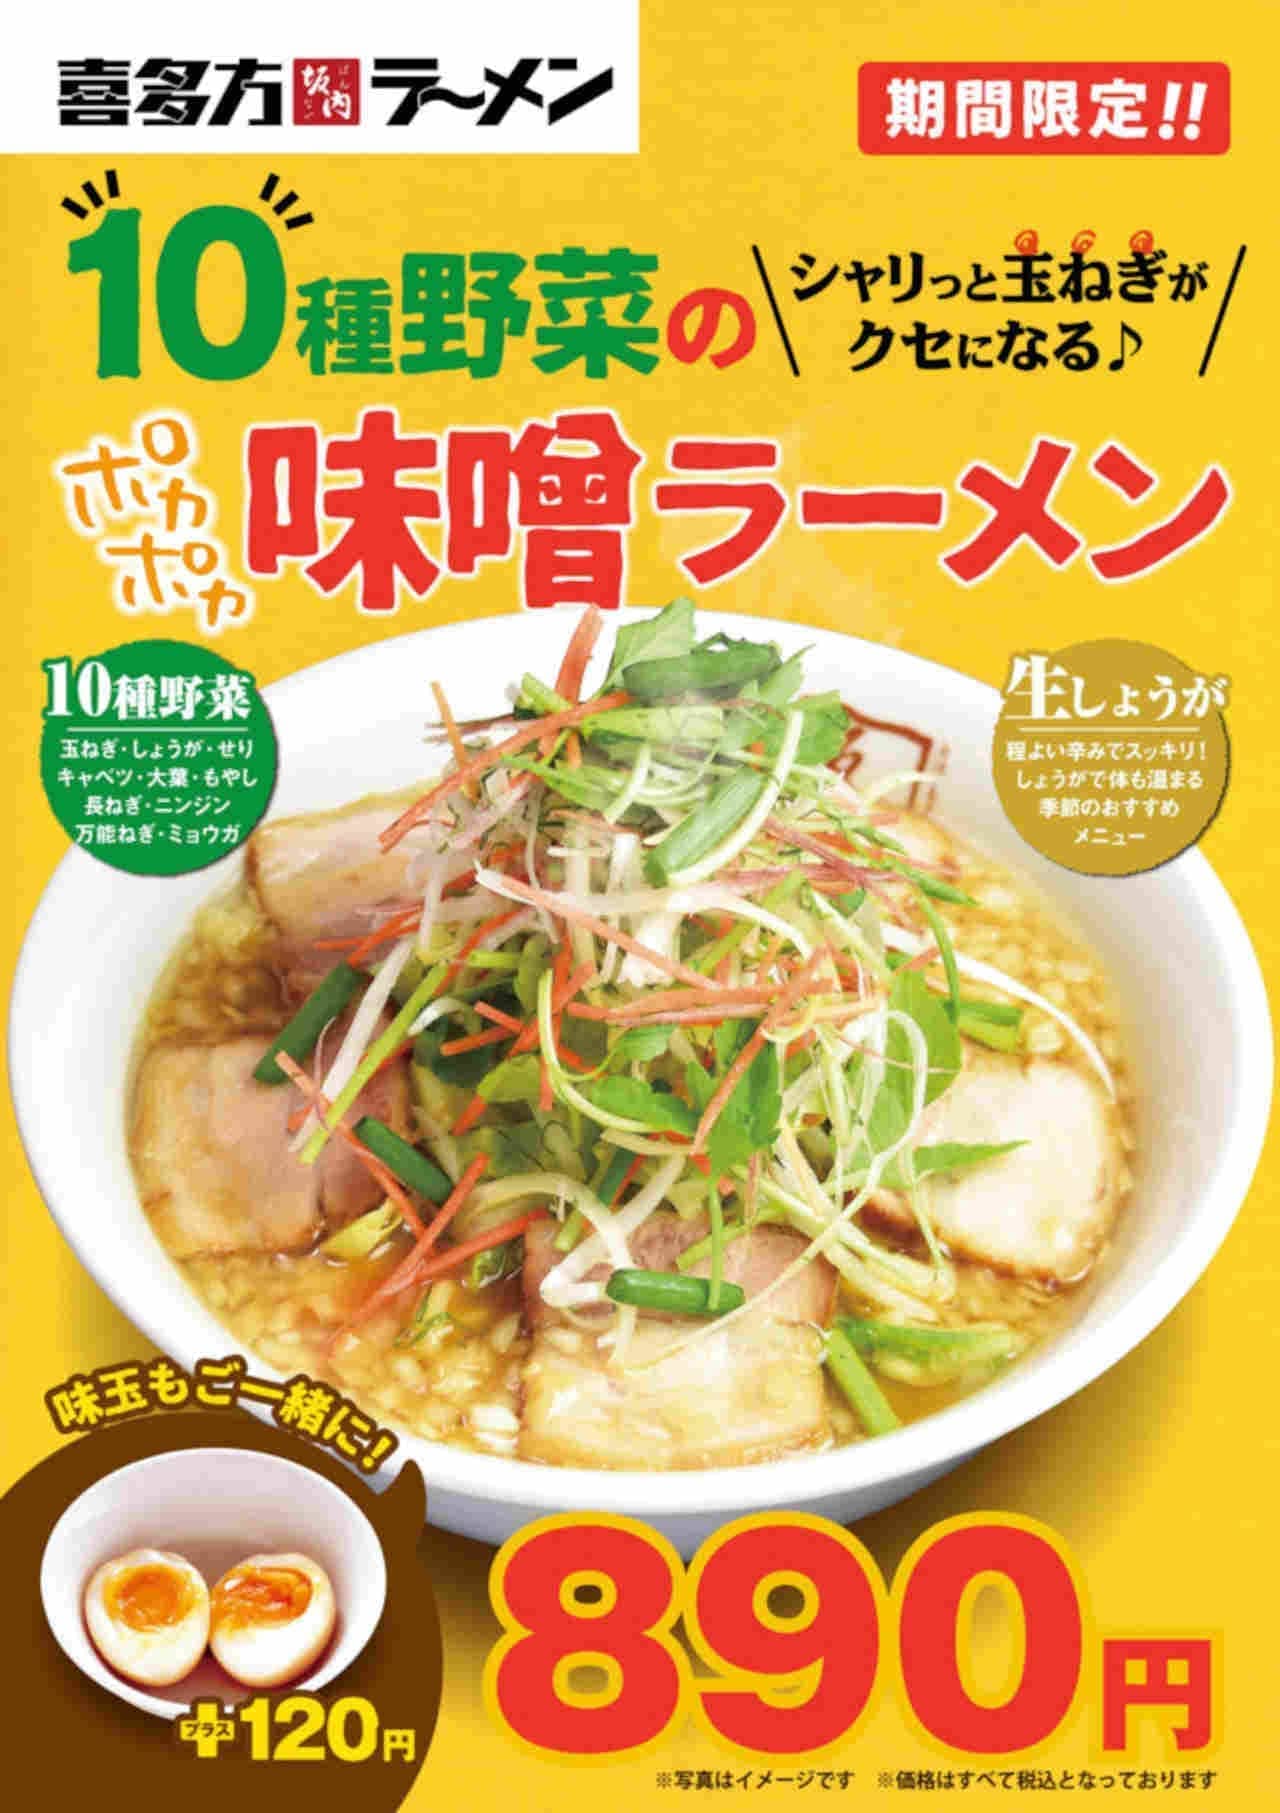 喜多方ラーメン坂内「10種野菜のポカポカ味噌ラーメン」